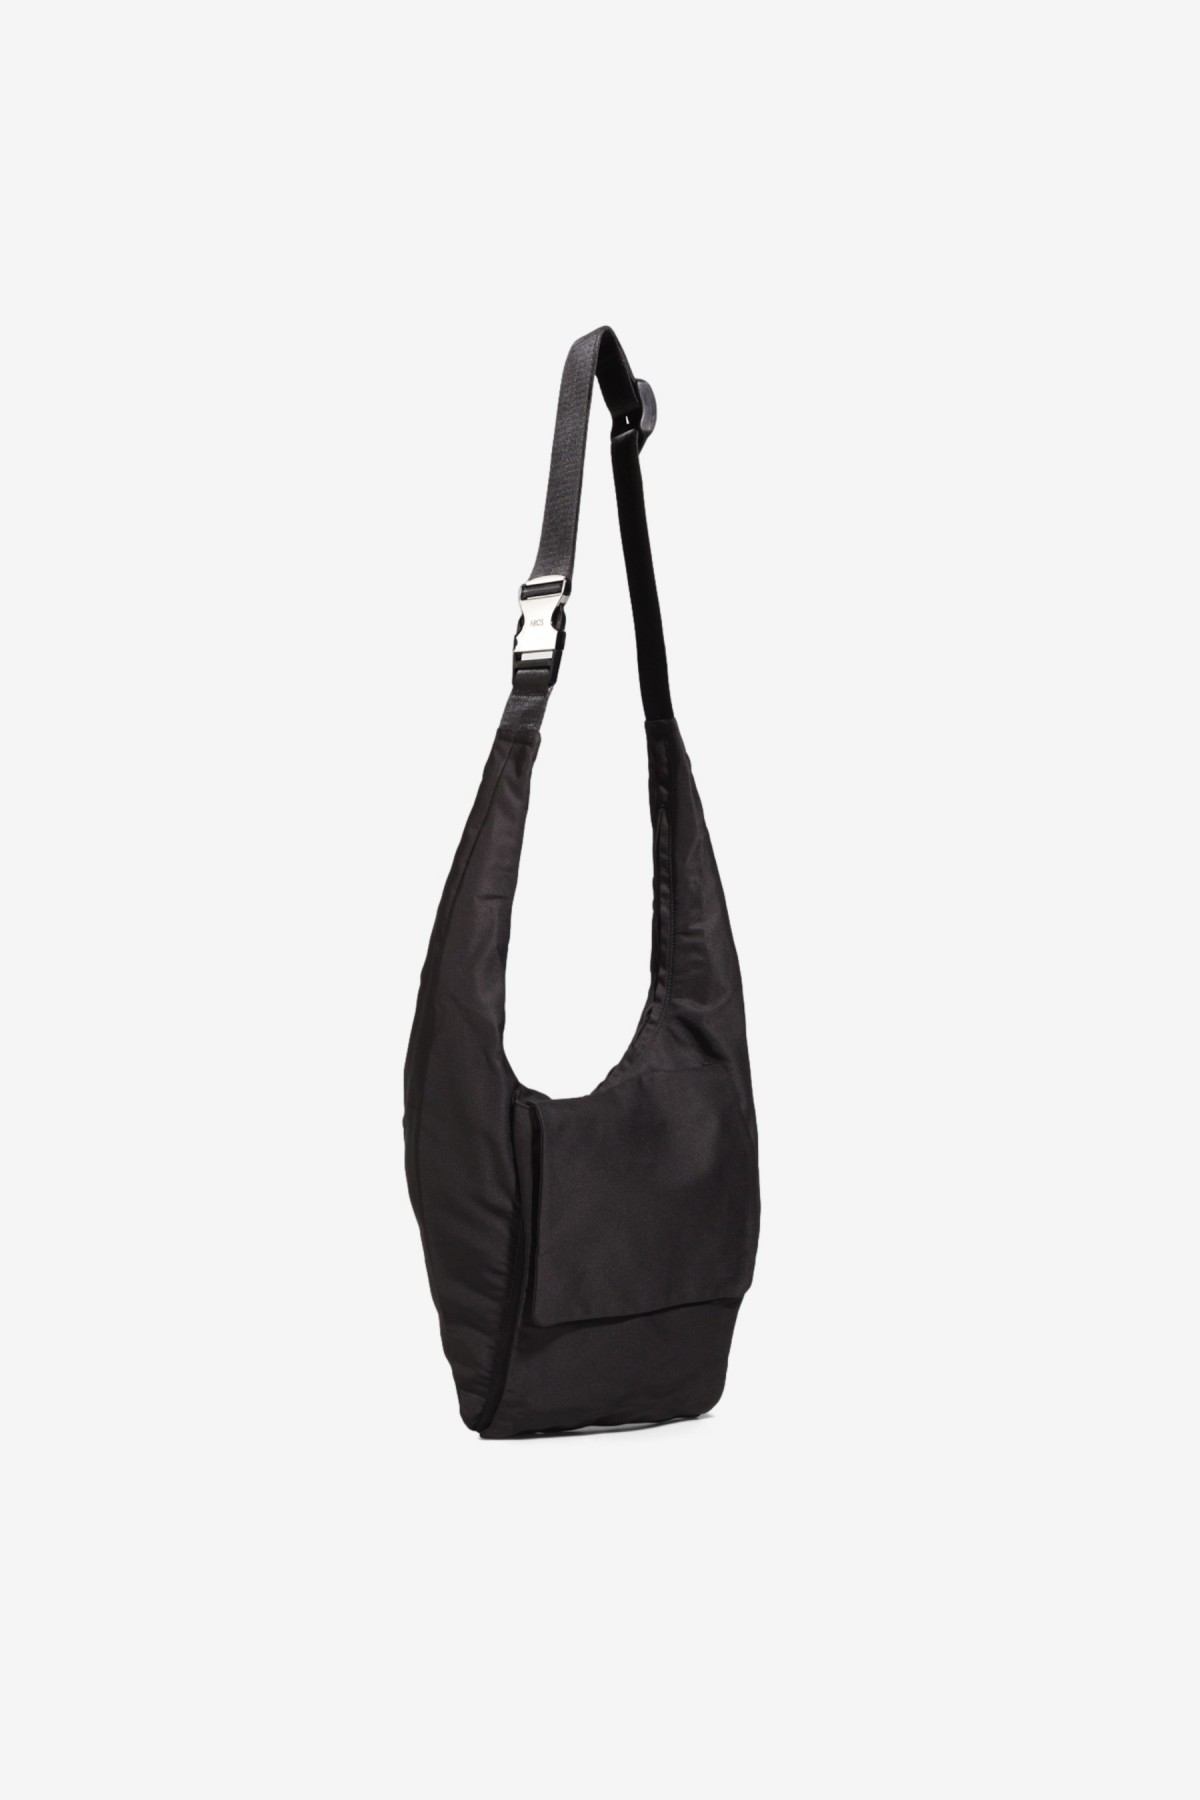 Arcs SAMPLE Wrap Bag in Black